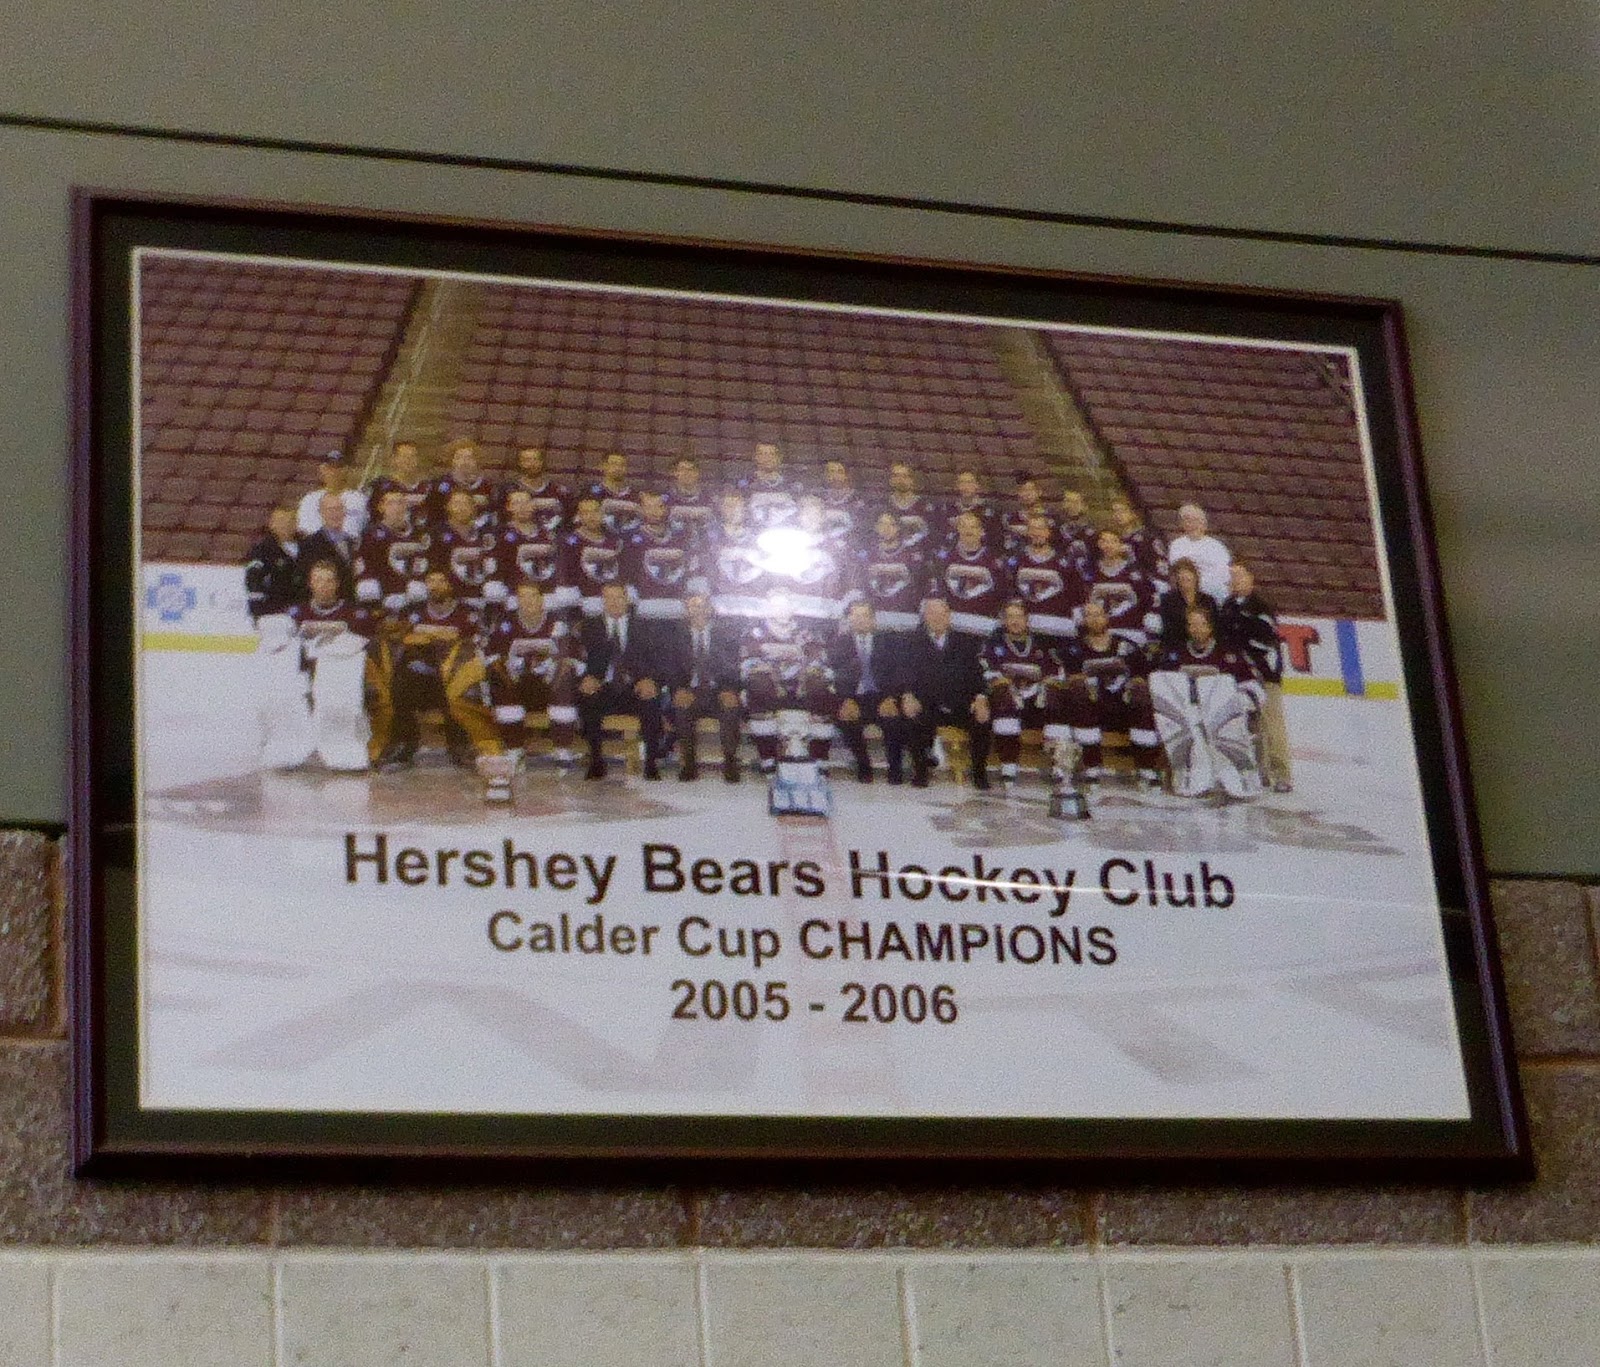 Hershey Bears - Wikipedia